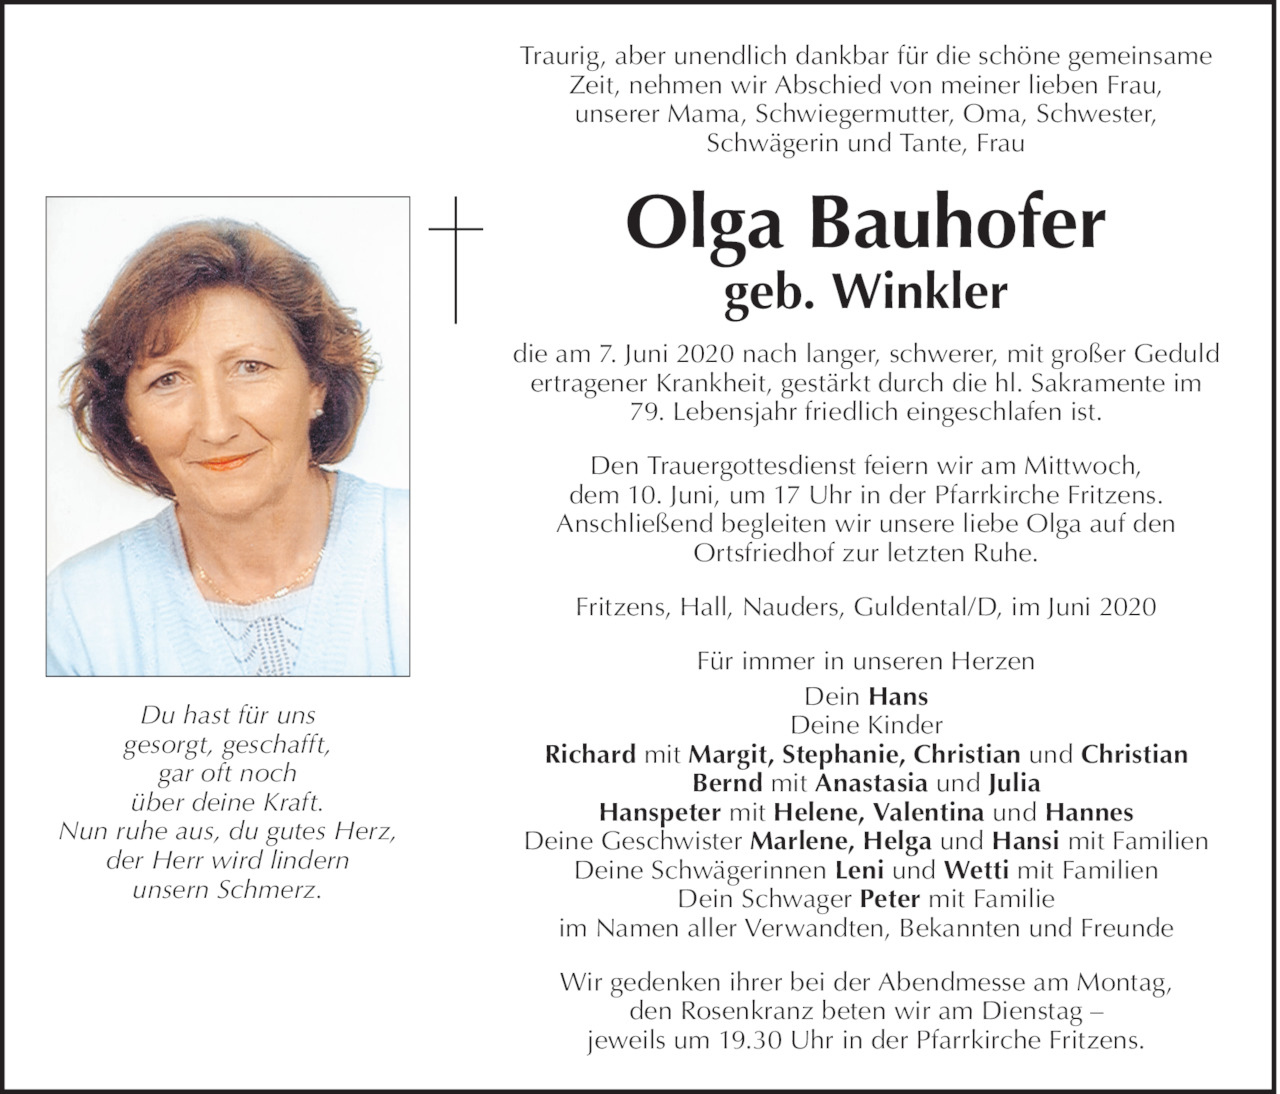 Olga Bauhofer